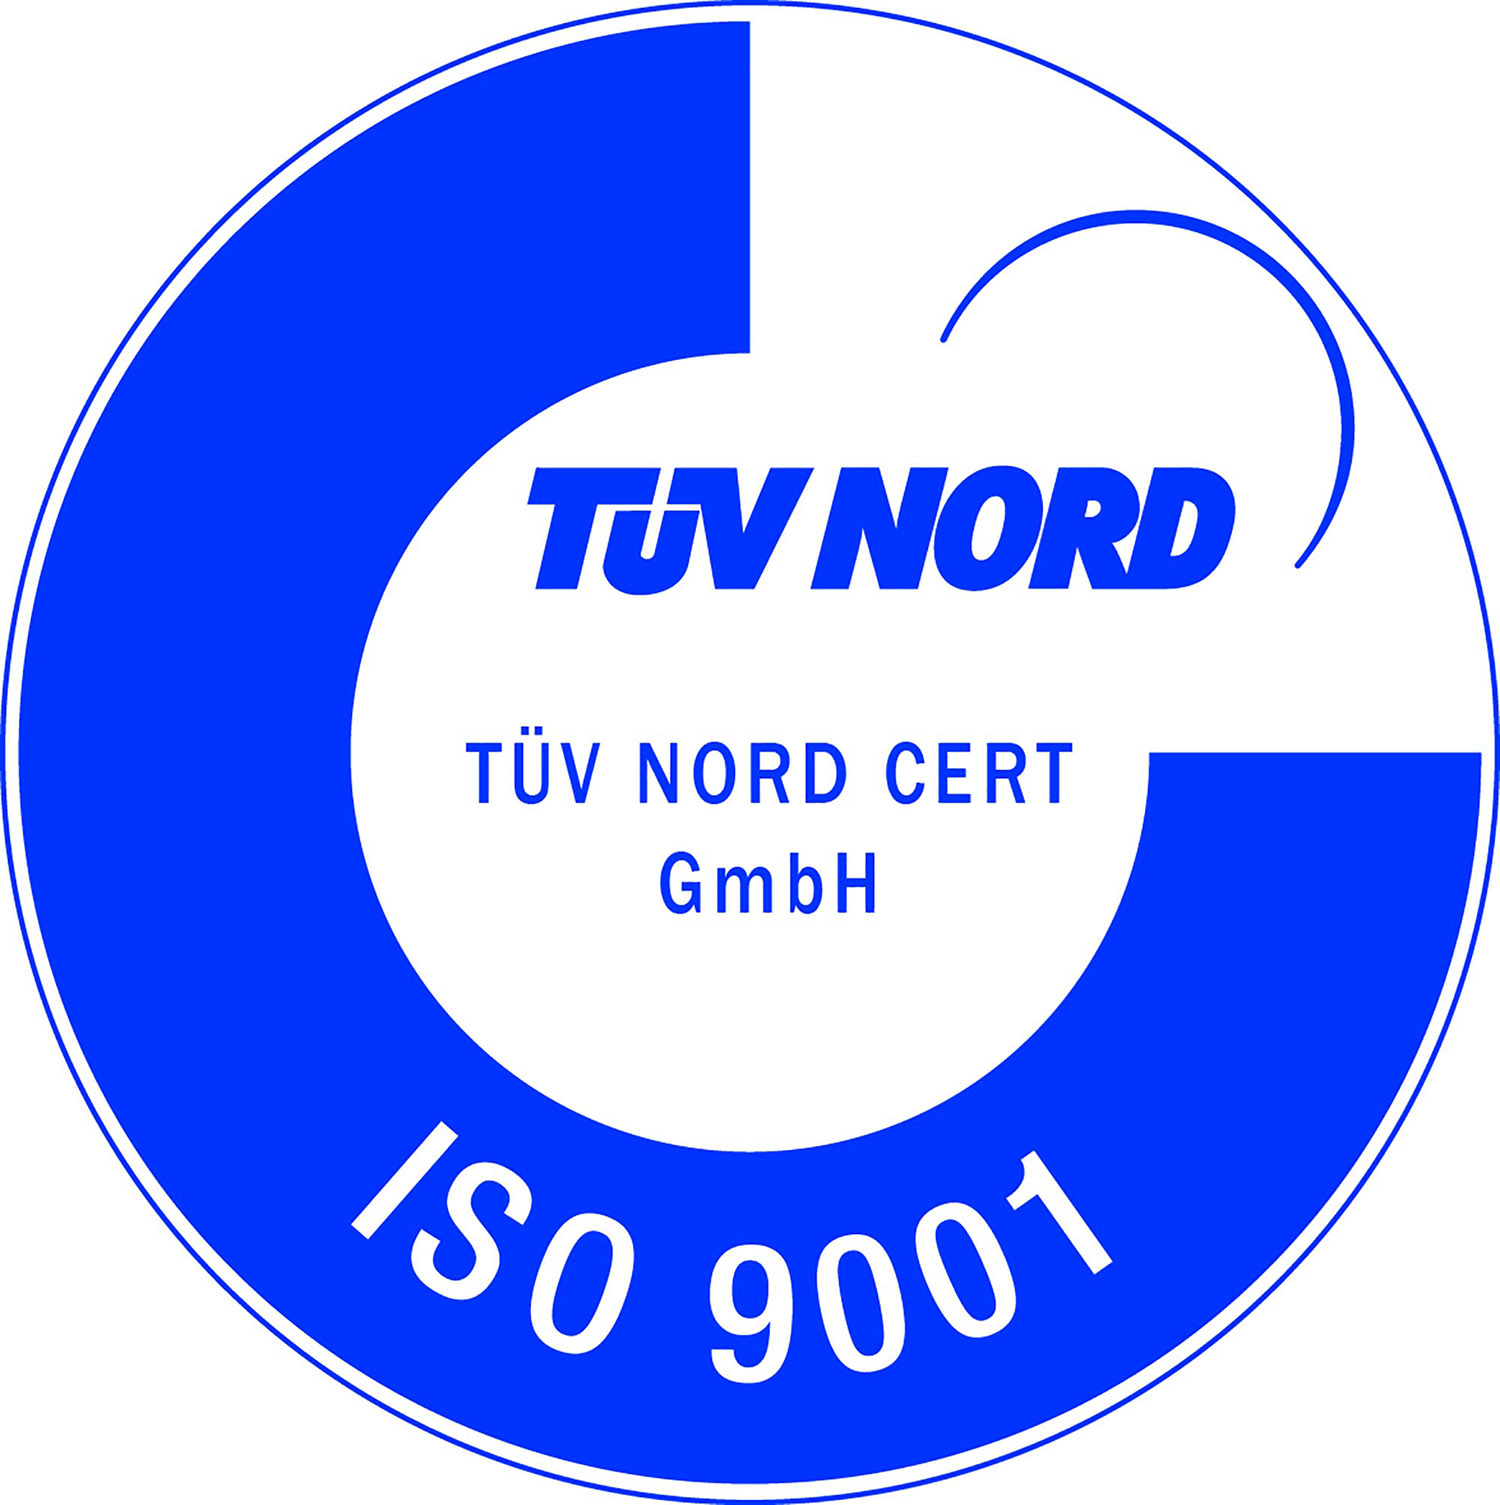 دریافت گواهینامه بین المللی ISO9001:2015 توسط شرکت پارسیان پیشرو صنعت